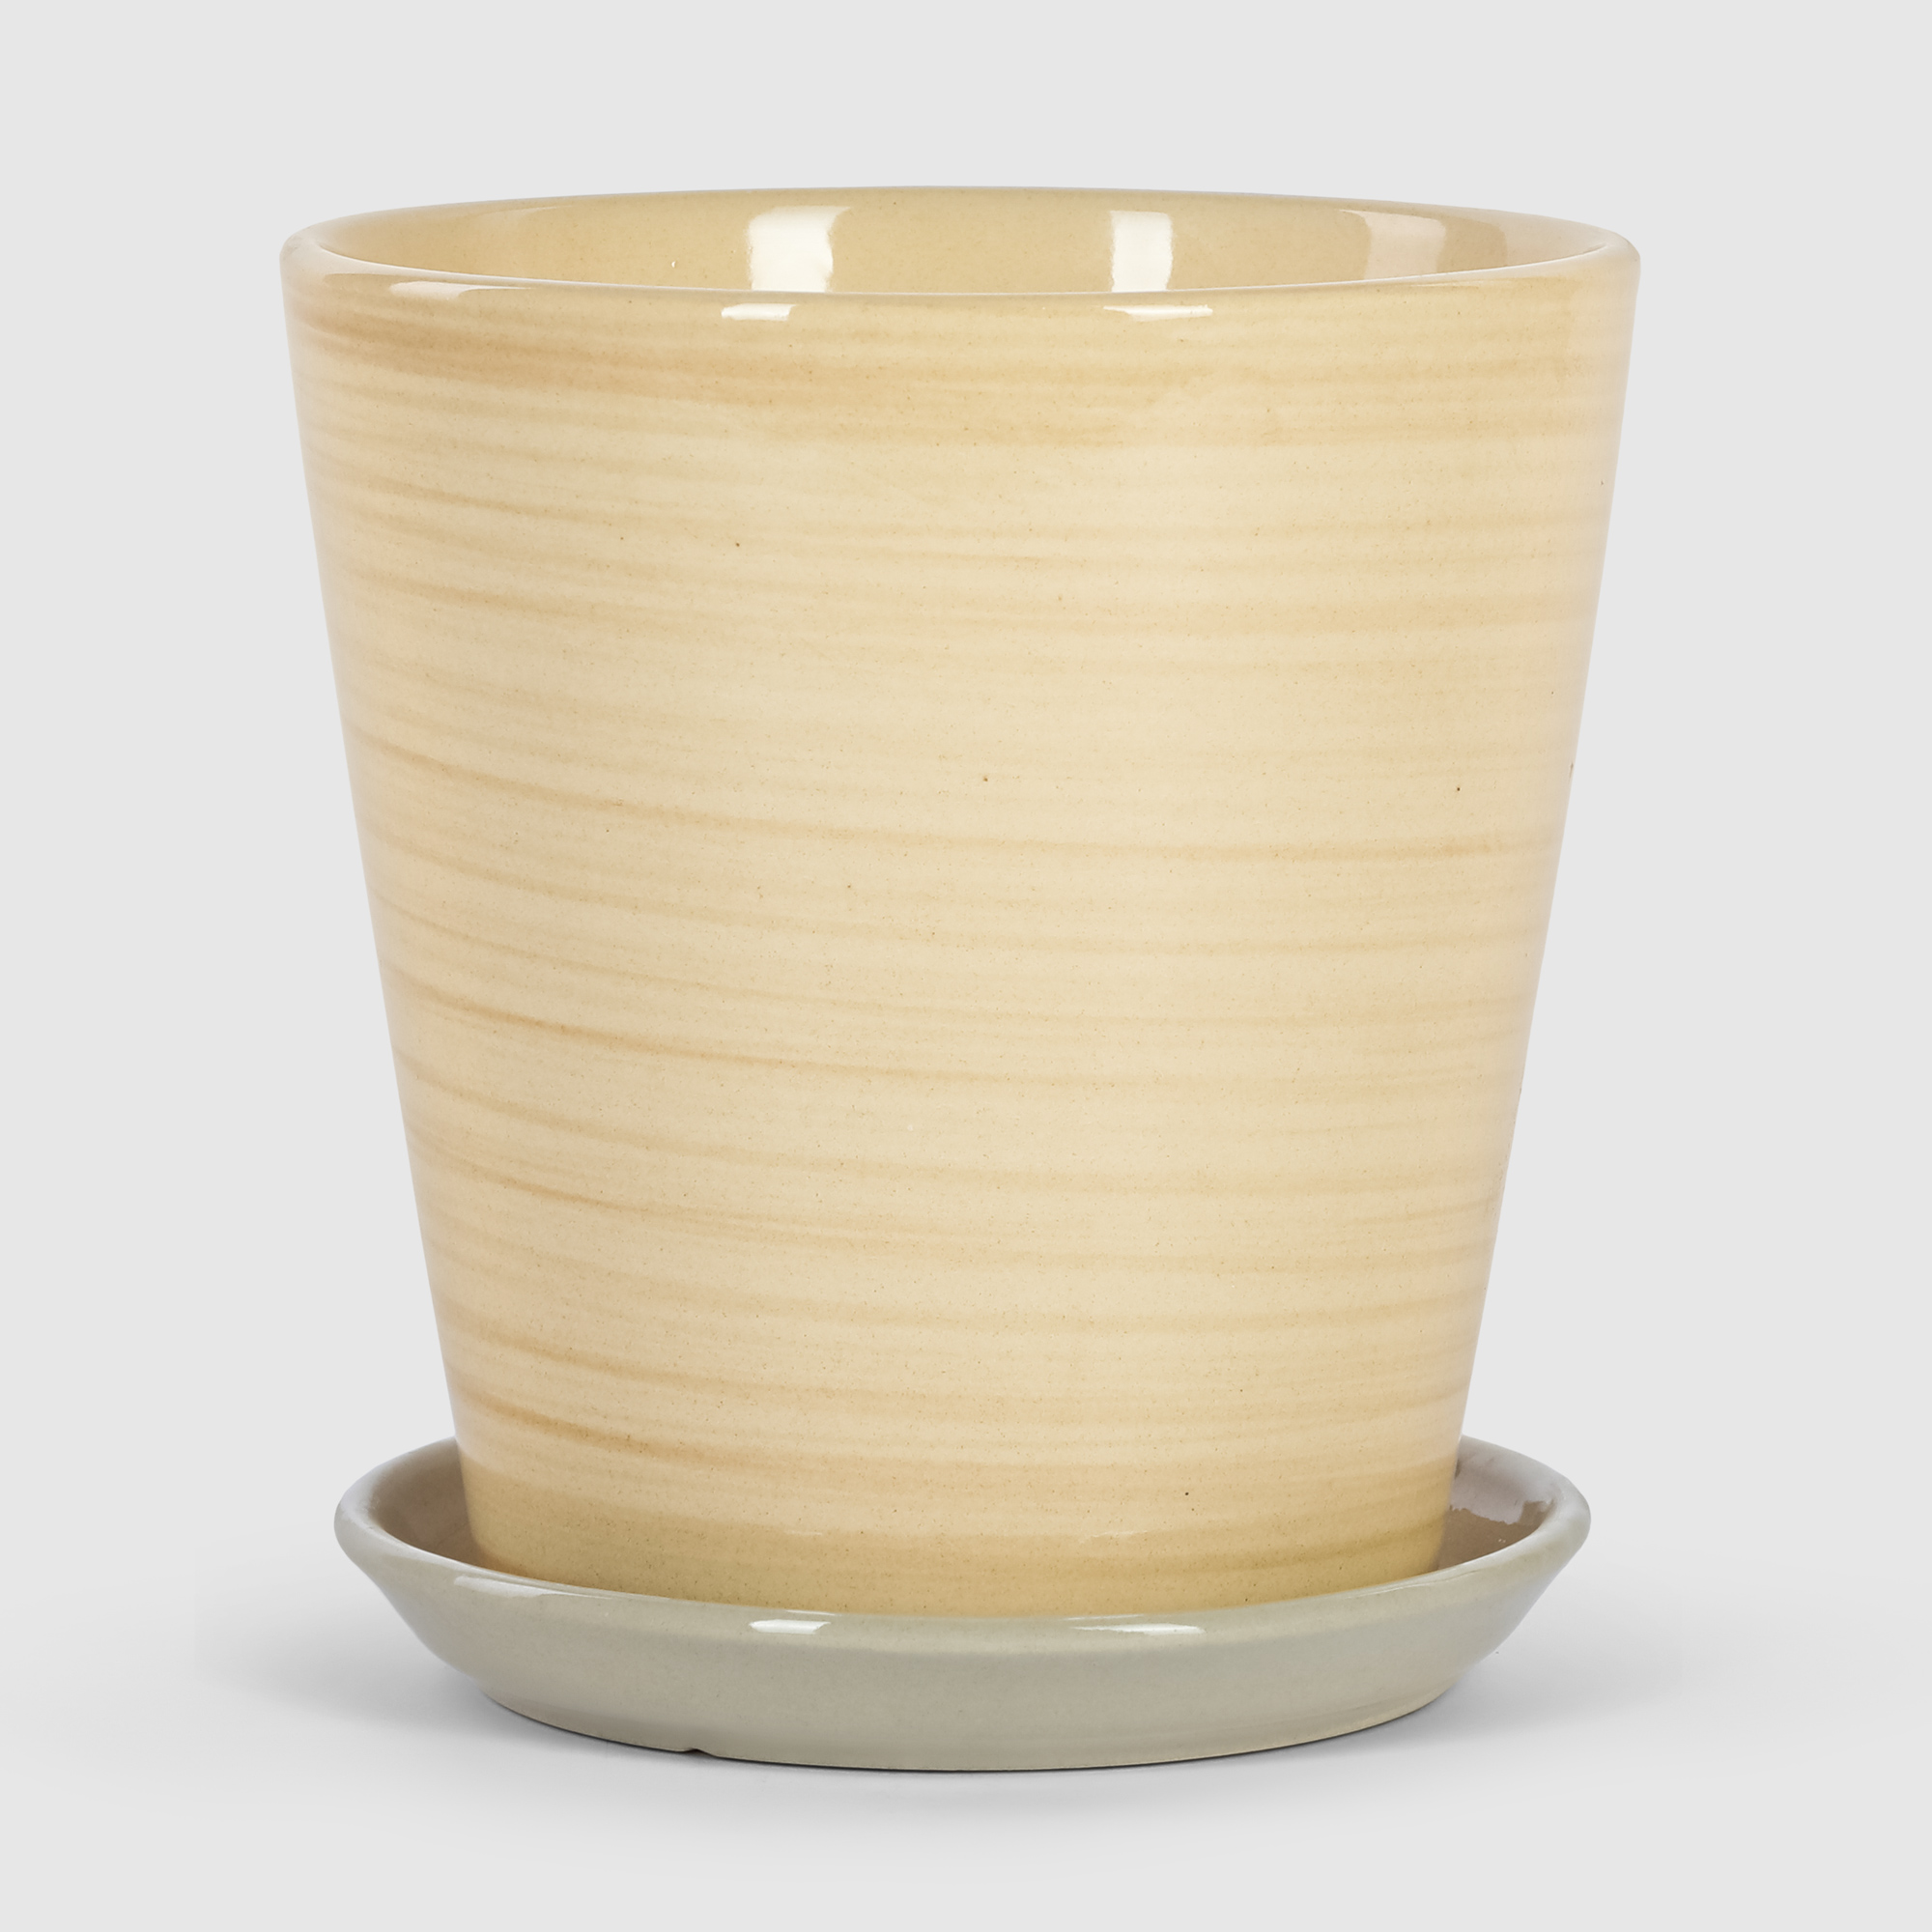 Кашпо керамическое для цветов Shine Pots 16x17см бежевое полосатое кашпо керамическое для ов shine pots 20x20см бежевое полосатое